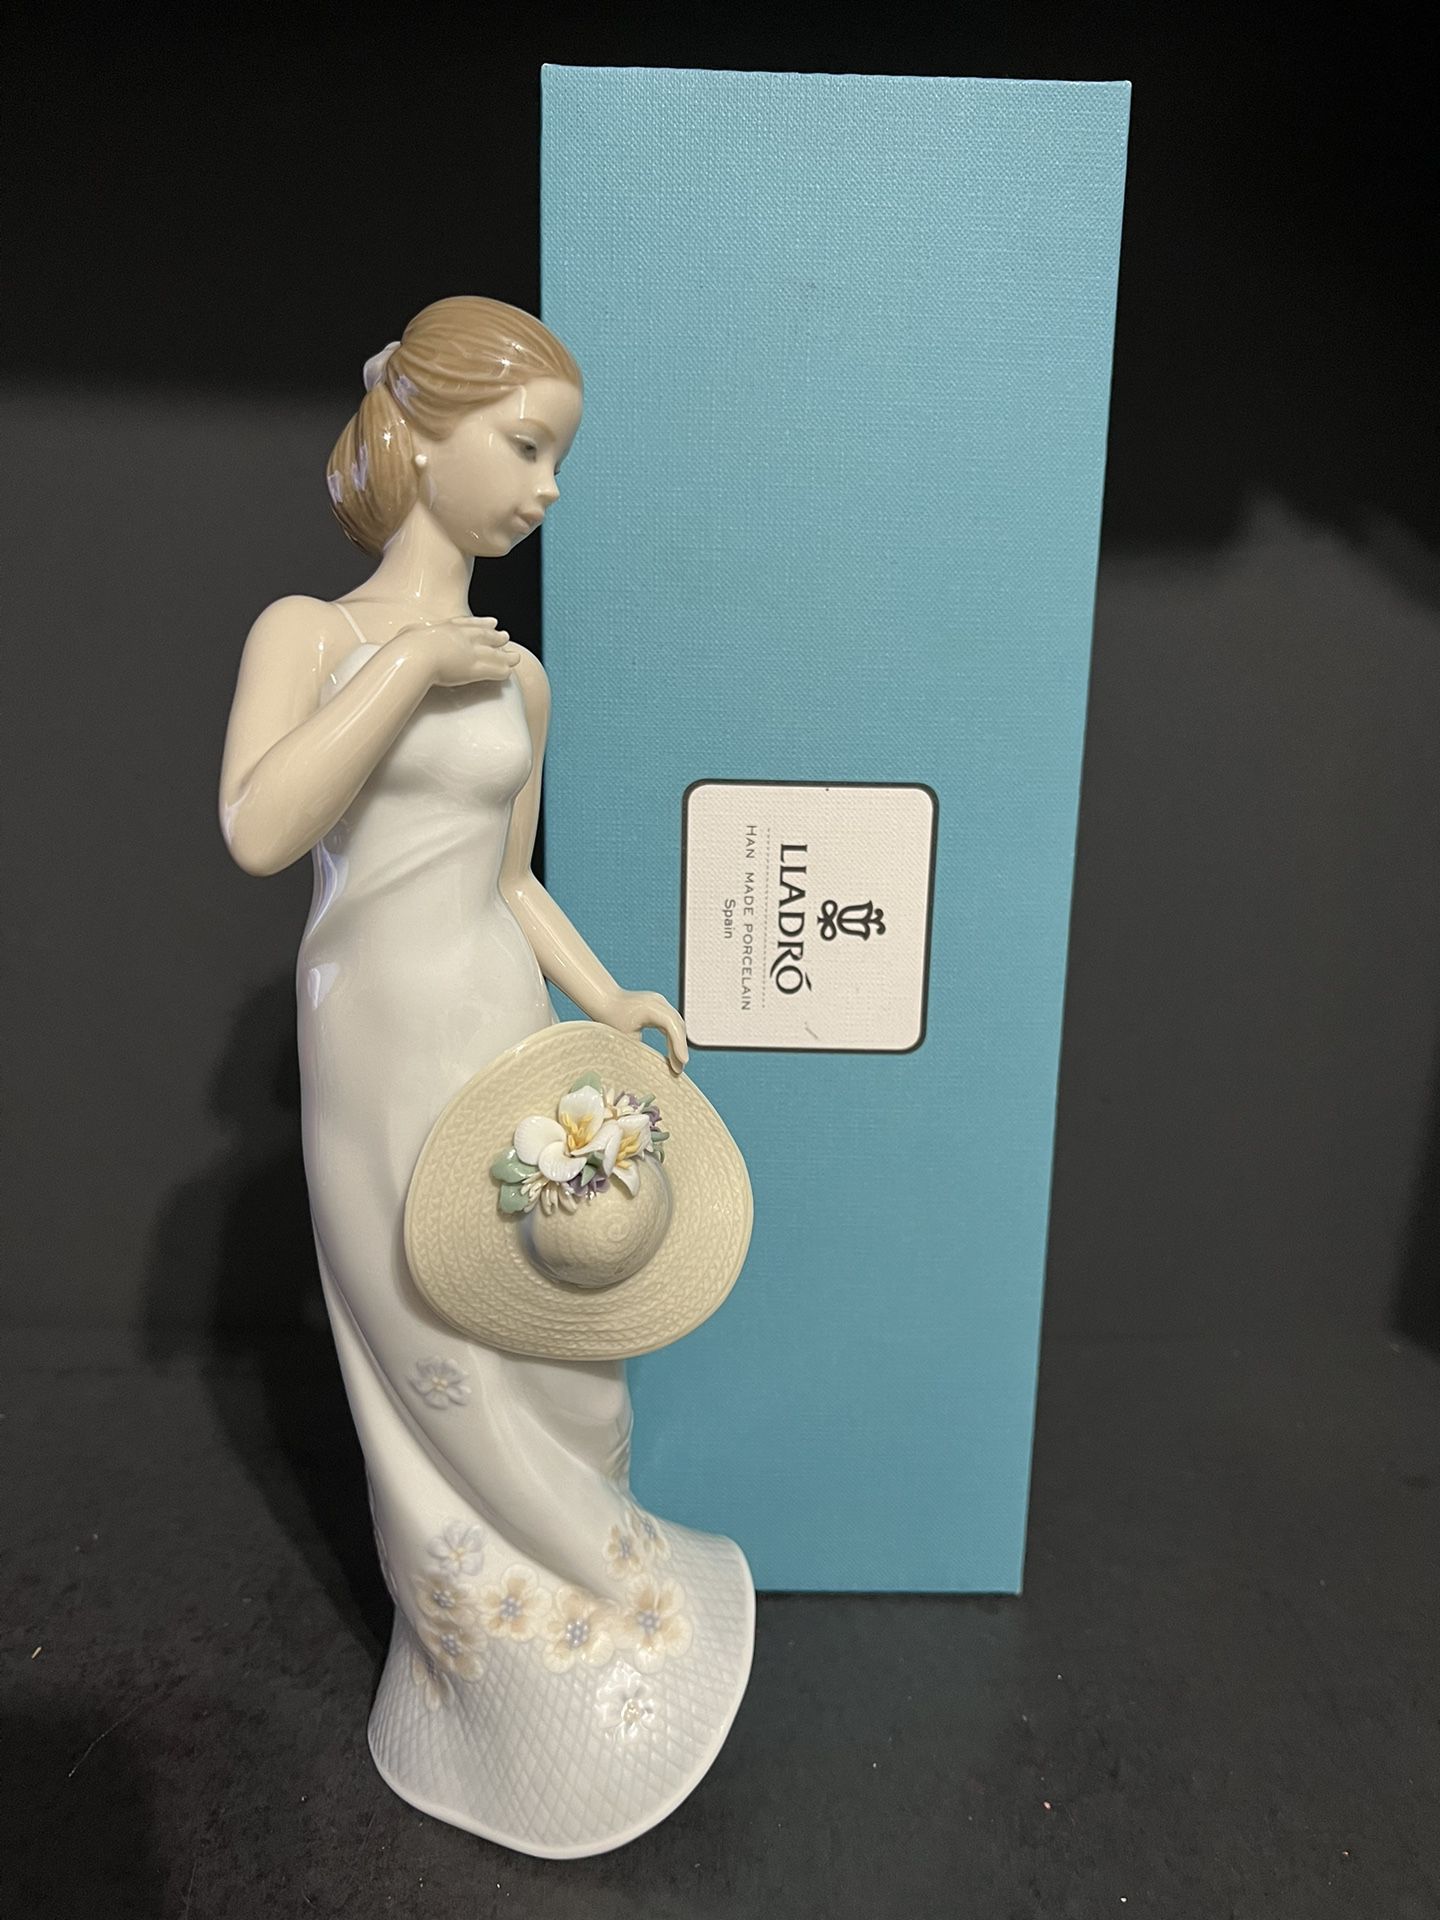 Rare 2016 Special Edition Lladro Porcelain Figurine #9213 “Spring Days” With Original Box